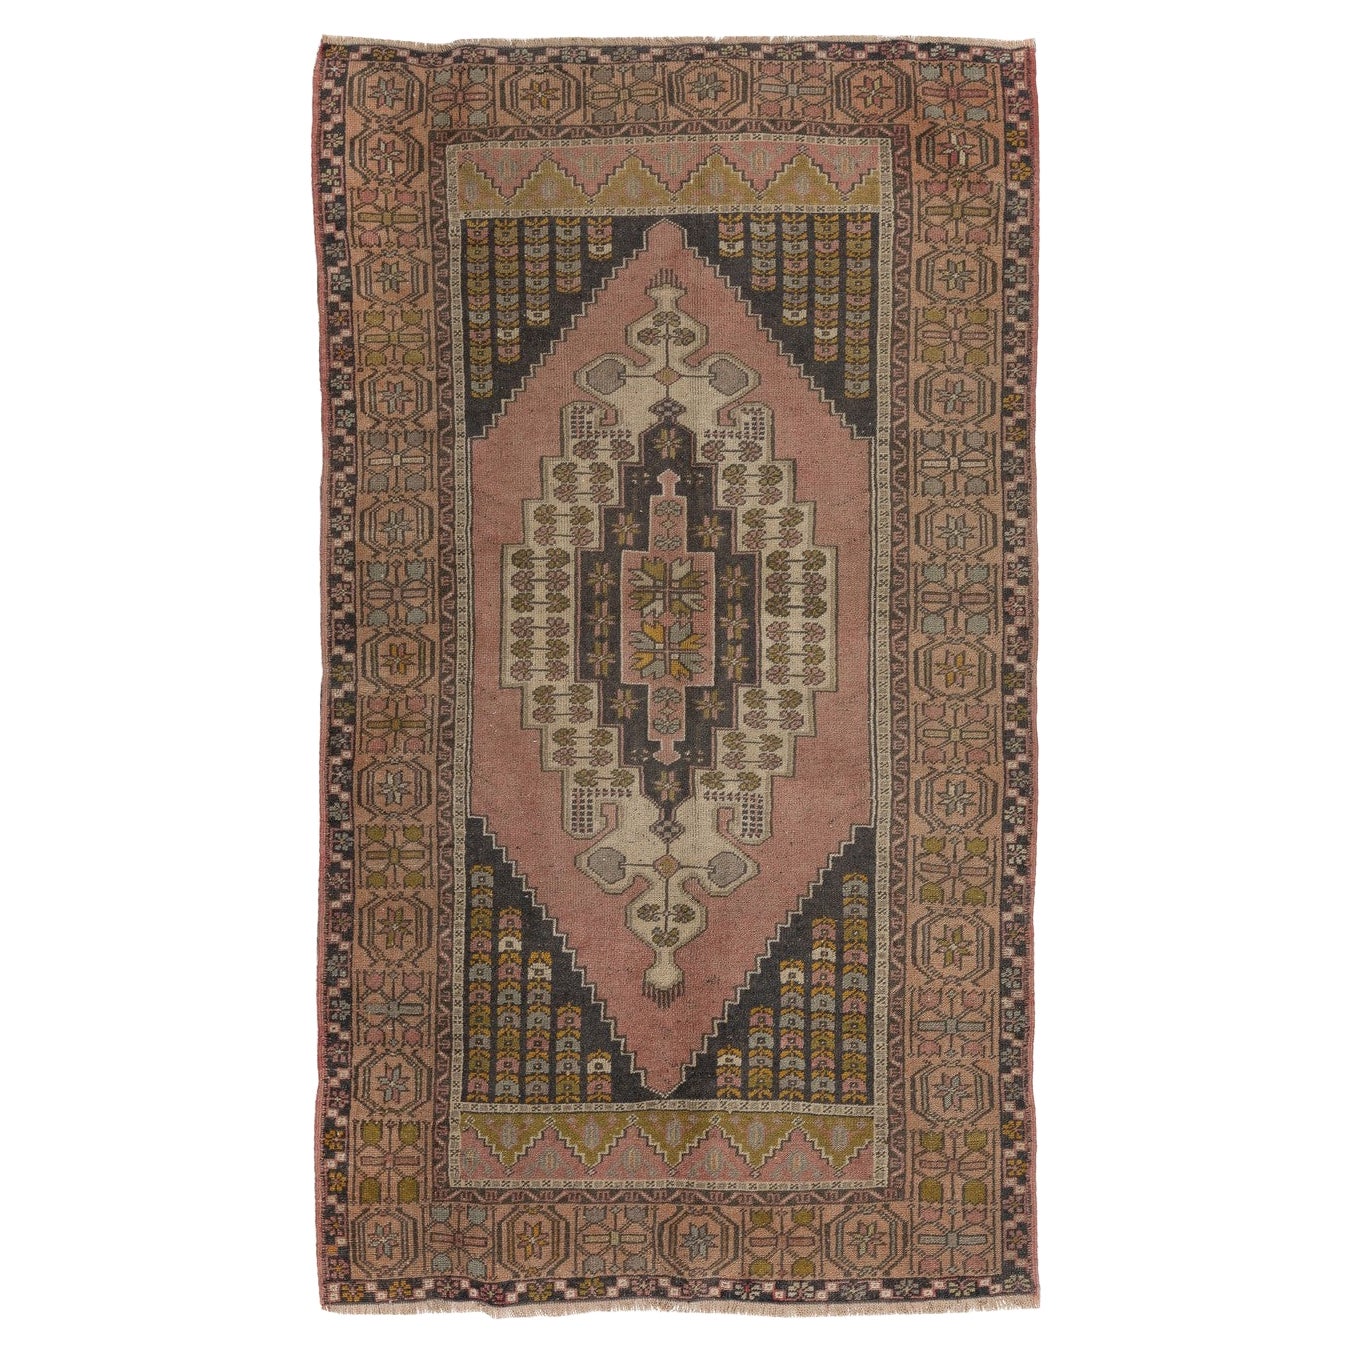 4,5x7.4 Ft Traditioneller handgeknüpfter türkischer Vintage-Teppich im Stammesstil